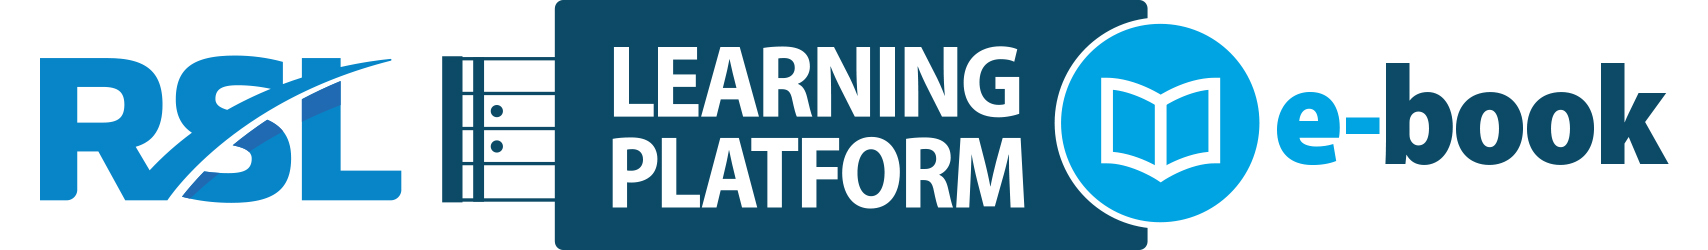 Learning Platform